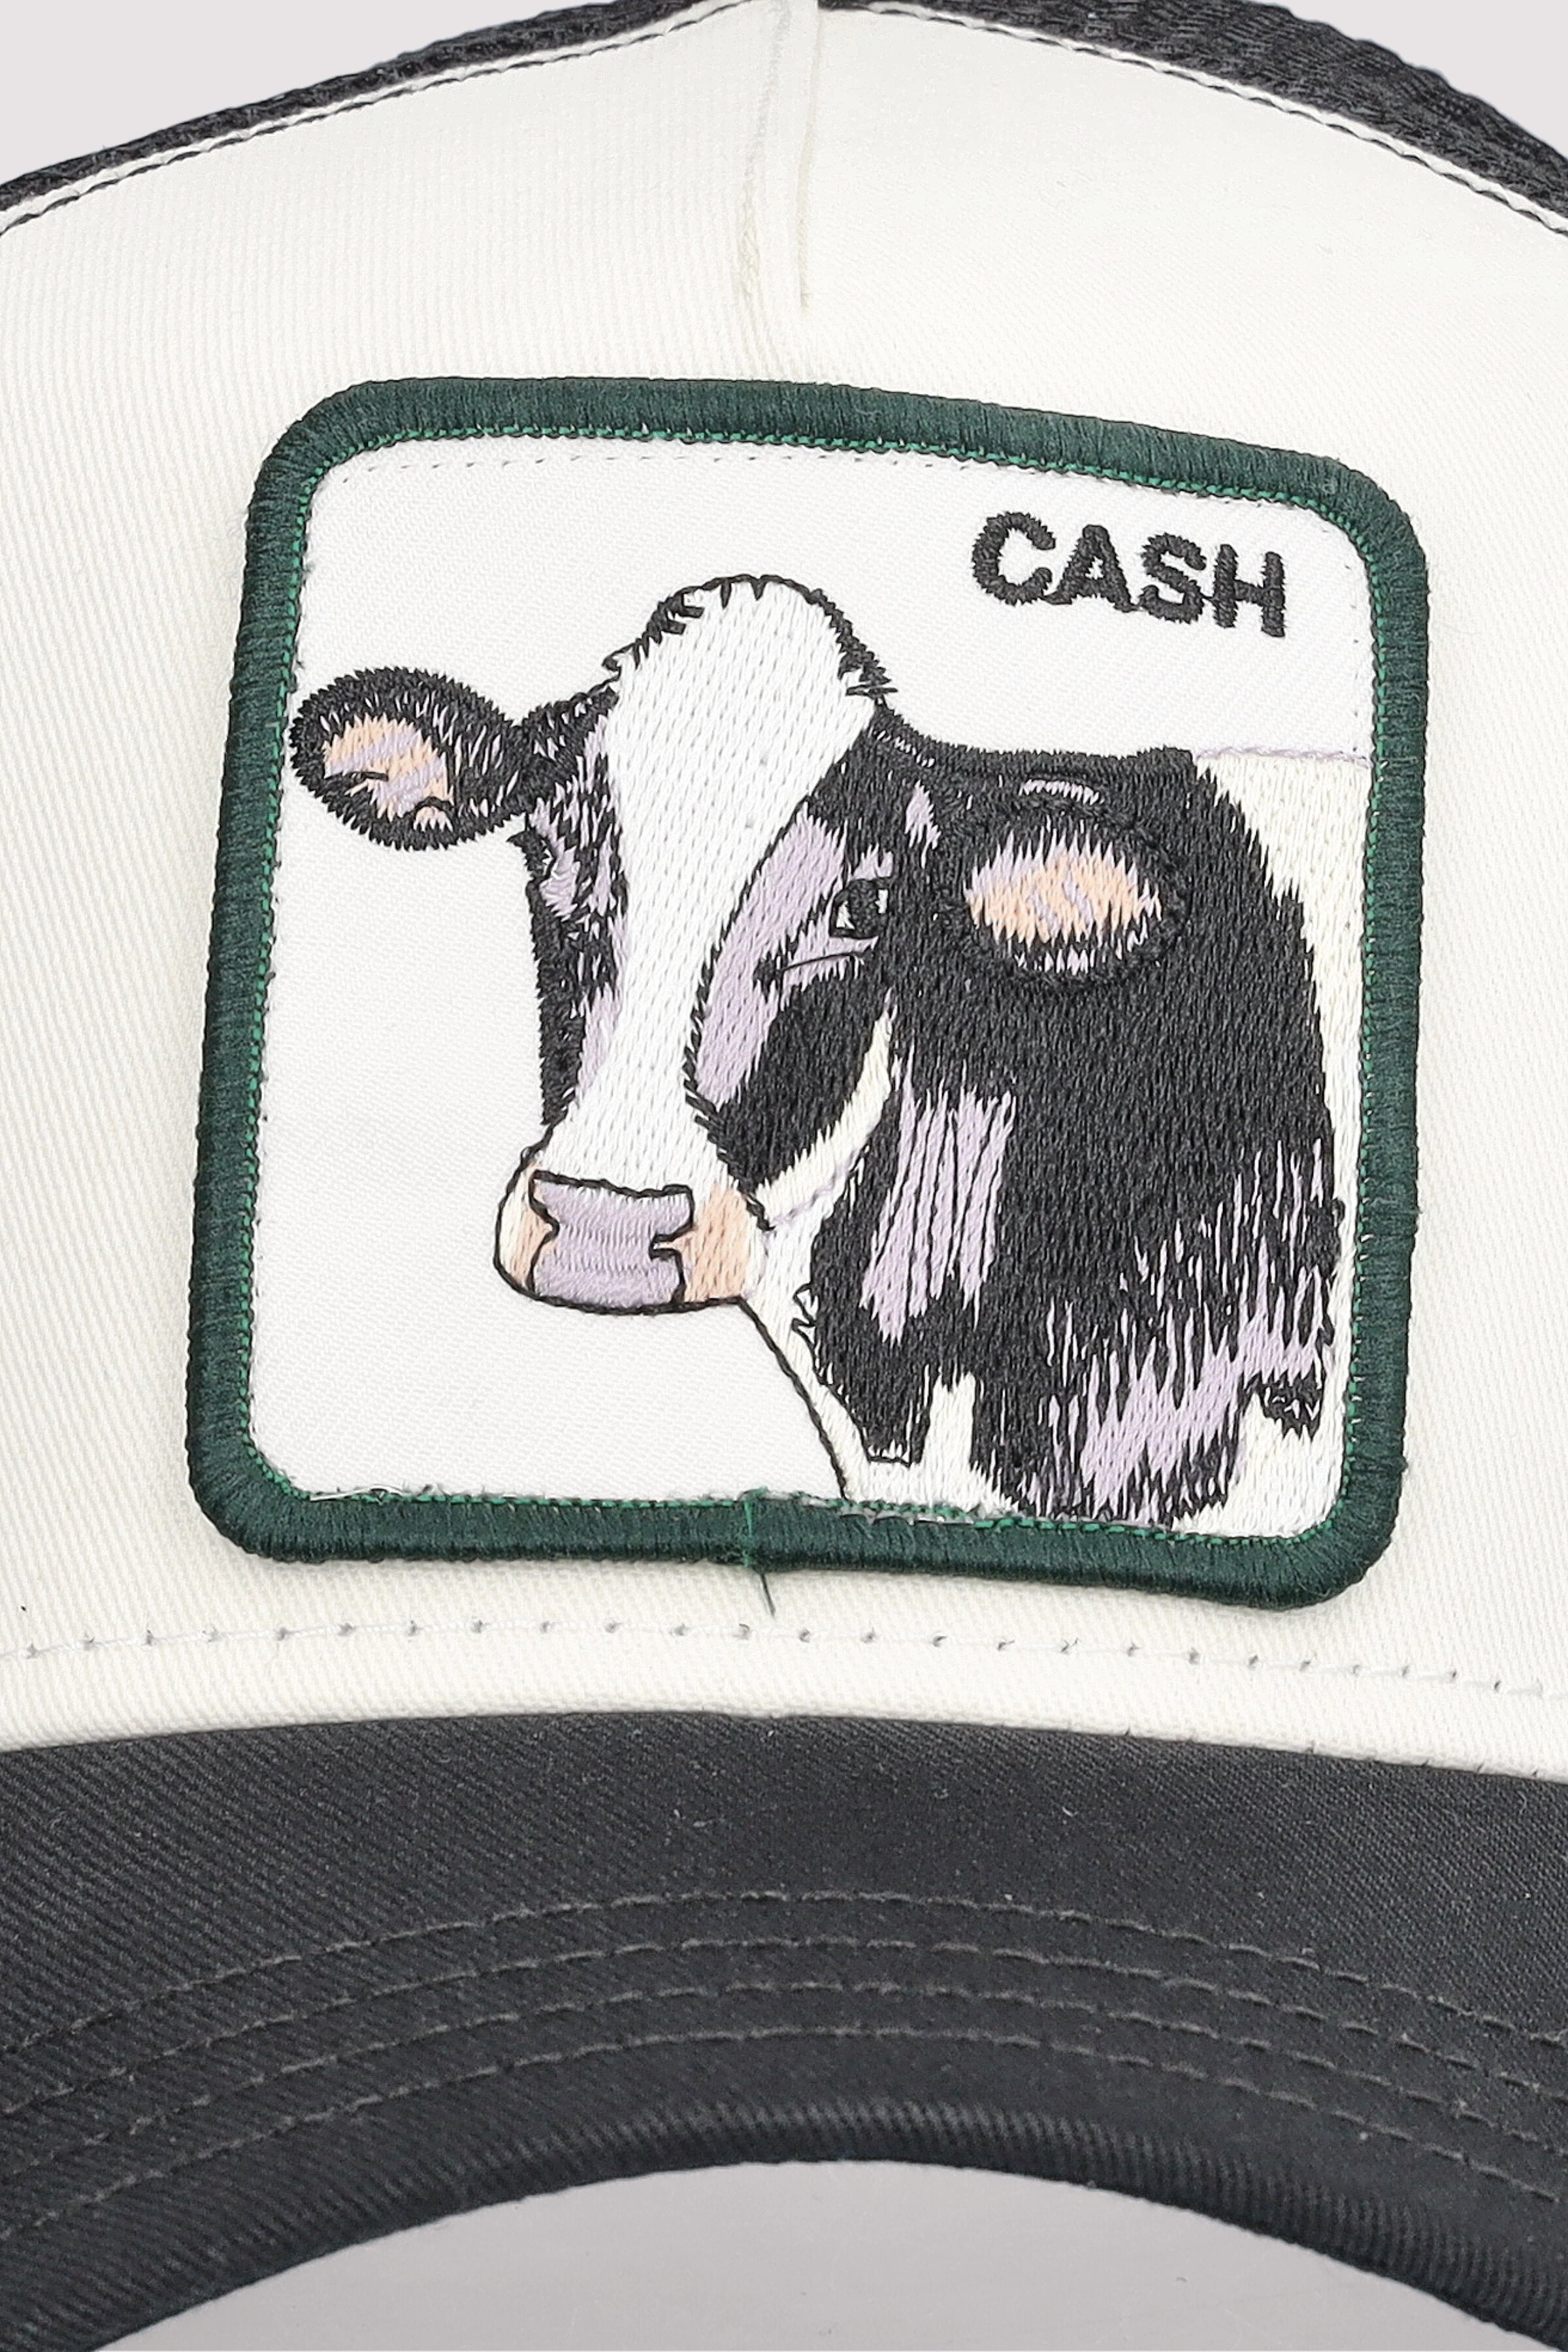 The Cash Cow